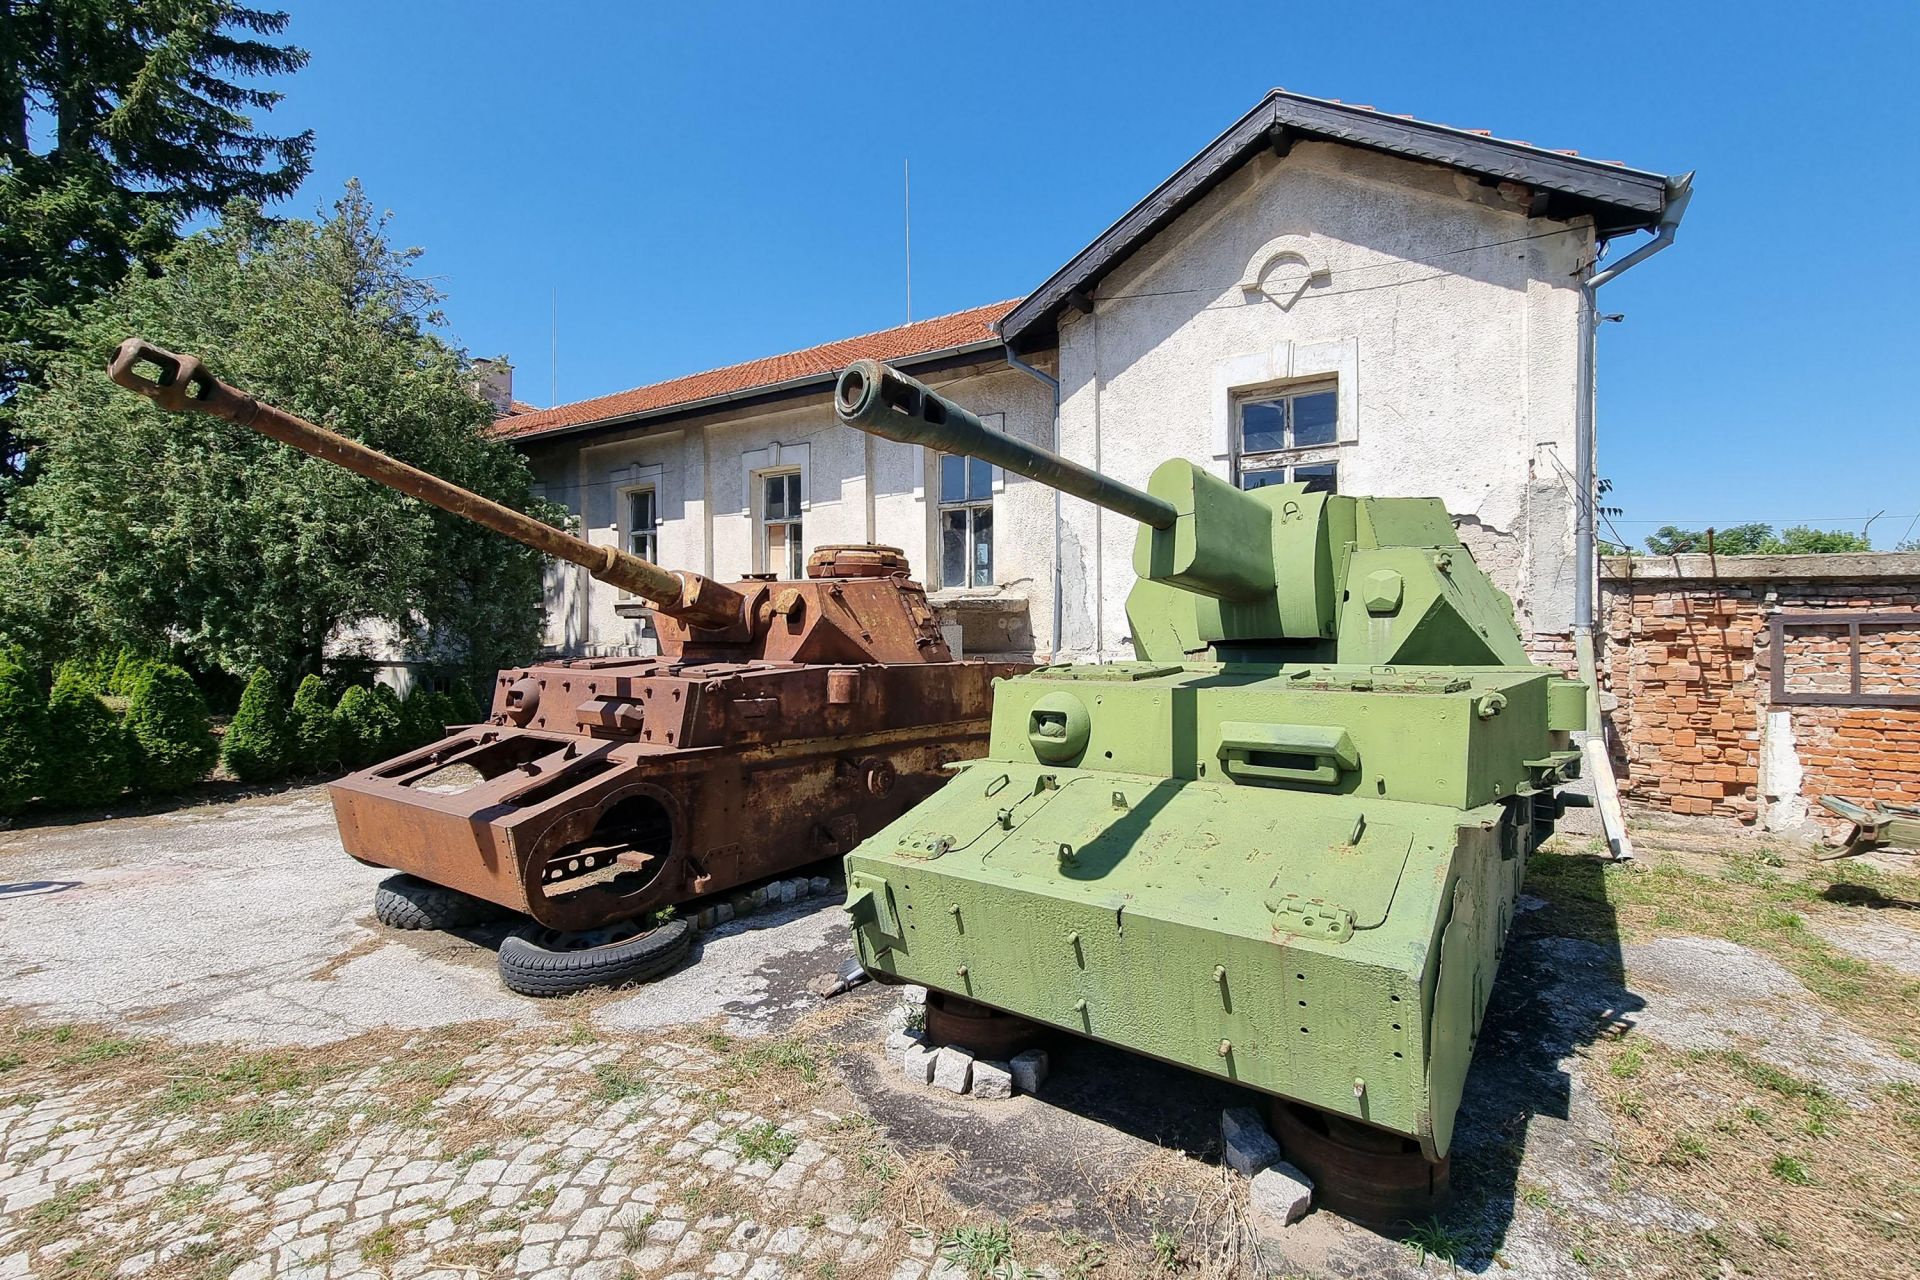 Два модела пред реставрация на среден танк Панцер 4 /Panzer IV/, на купола на десния е монтирано съветско оръдие ЗиС-3